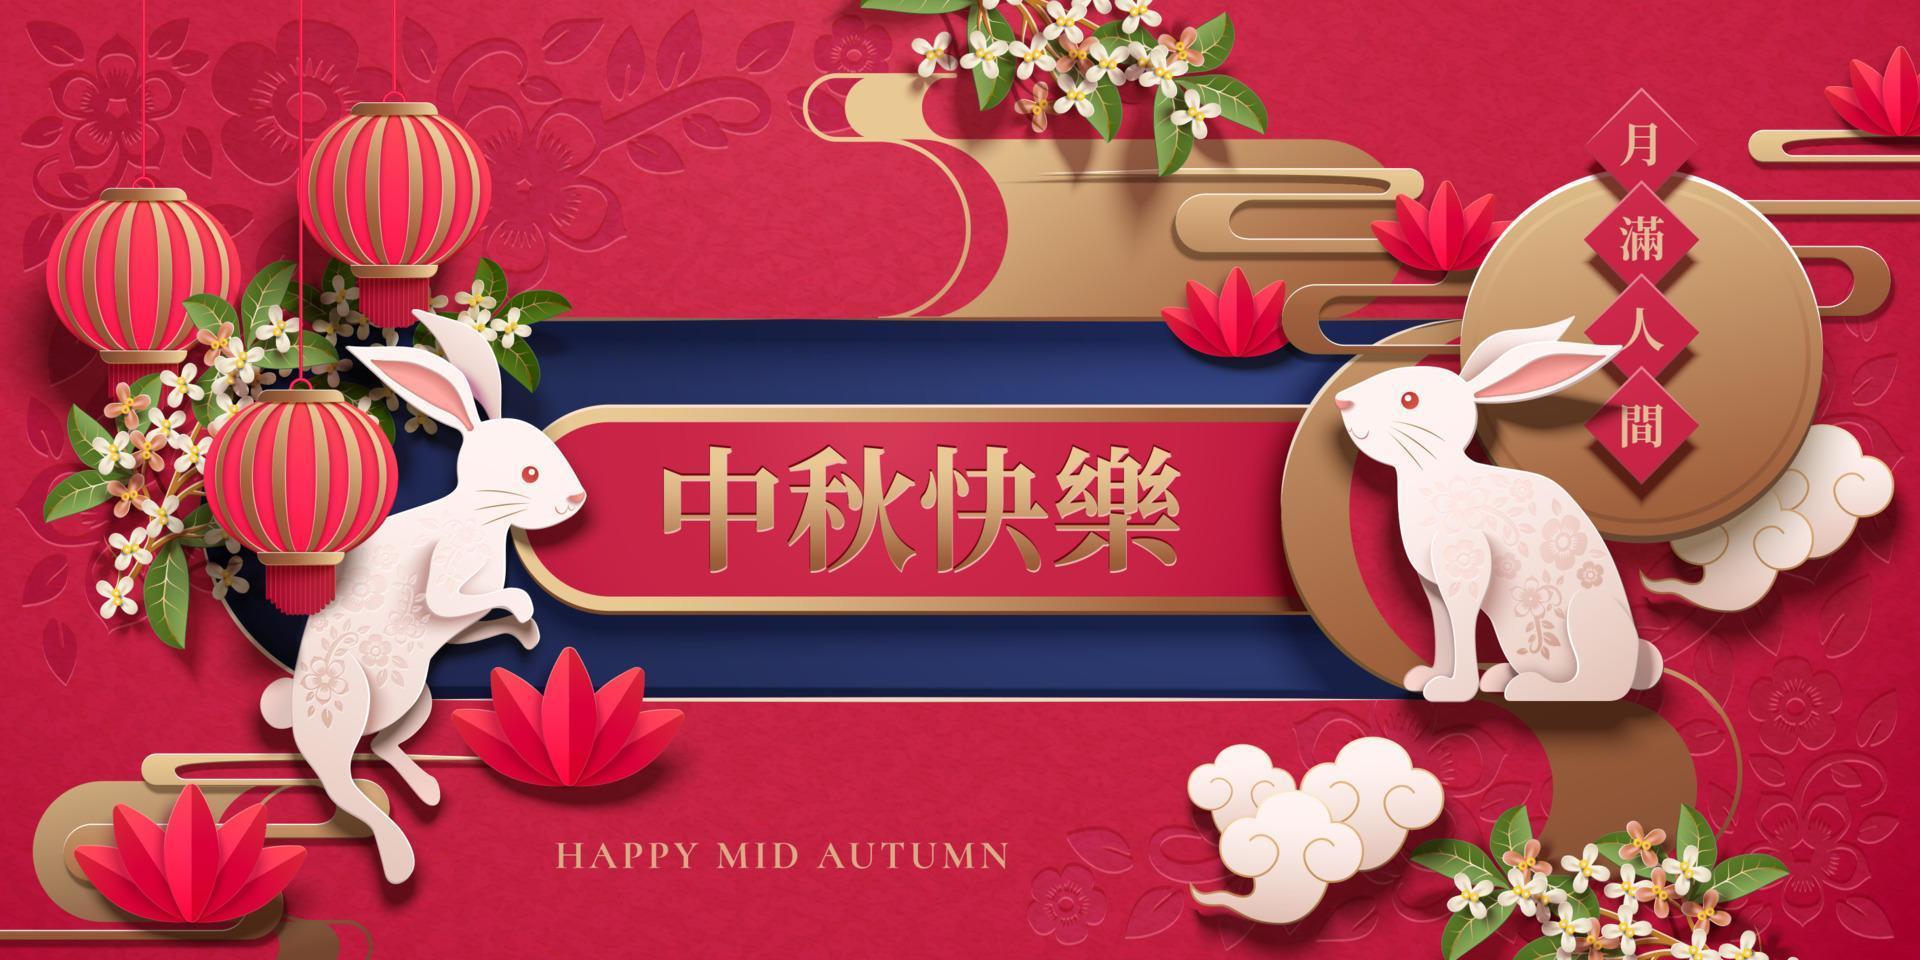 feliz design de arte em papel do festival do meio do outono com coelho branco e elementos de lanternas em fundo vermelho, nome do feriado escrito em palavras chinesas vetor